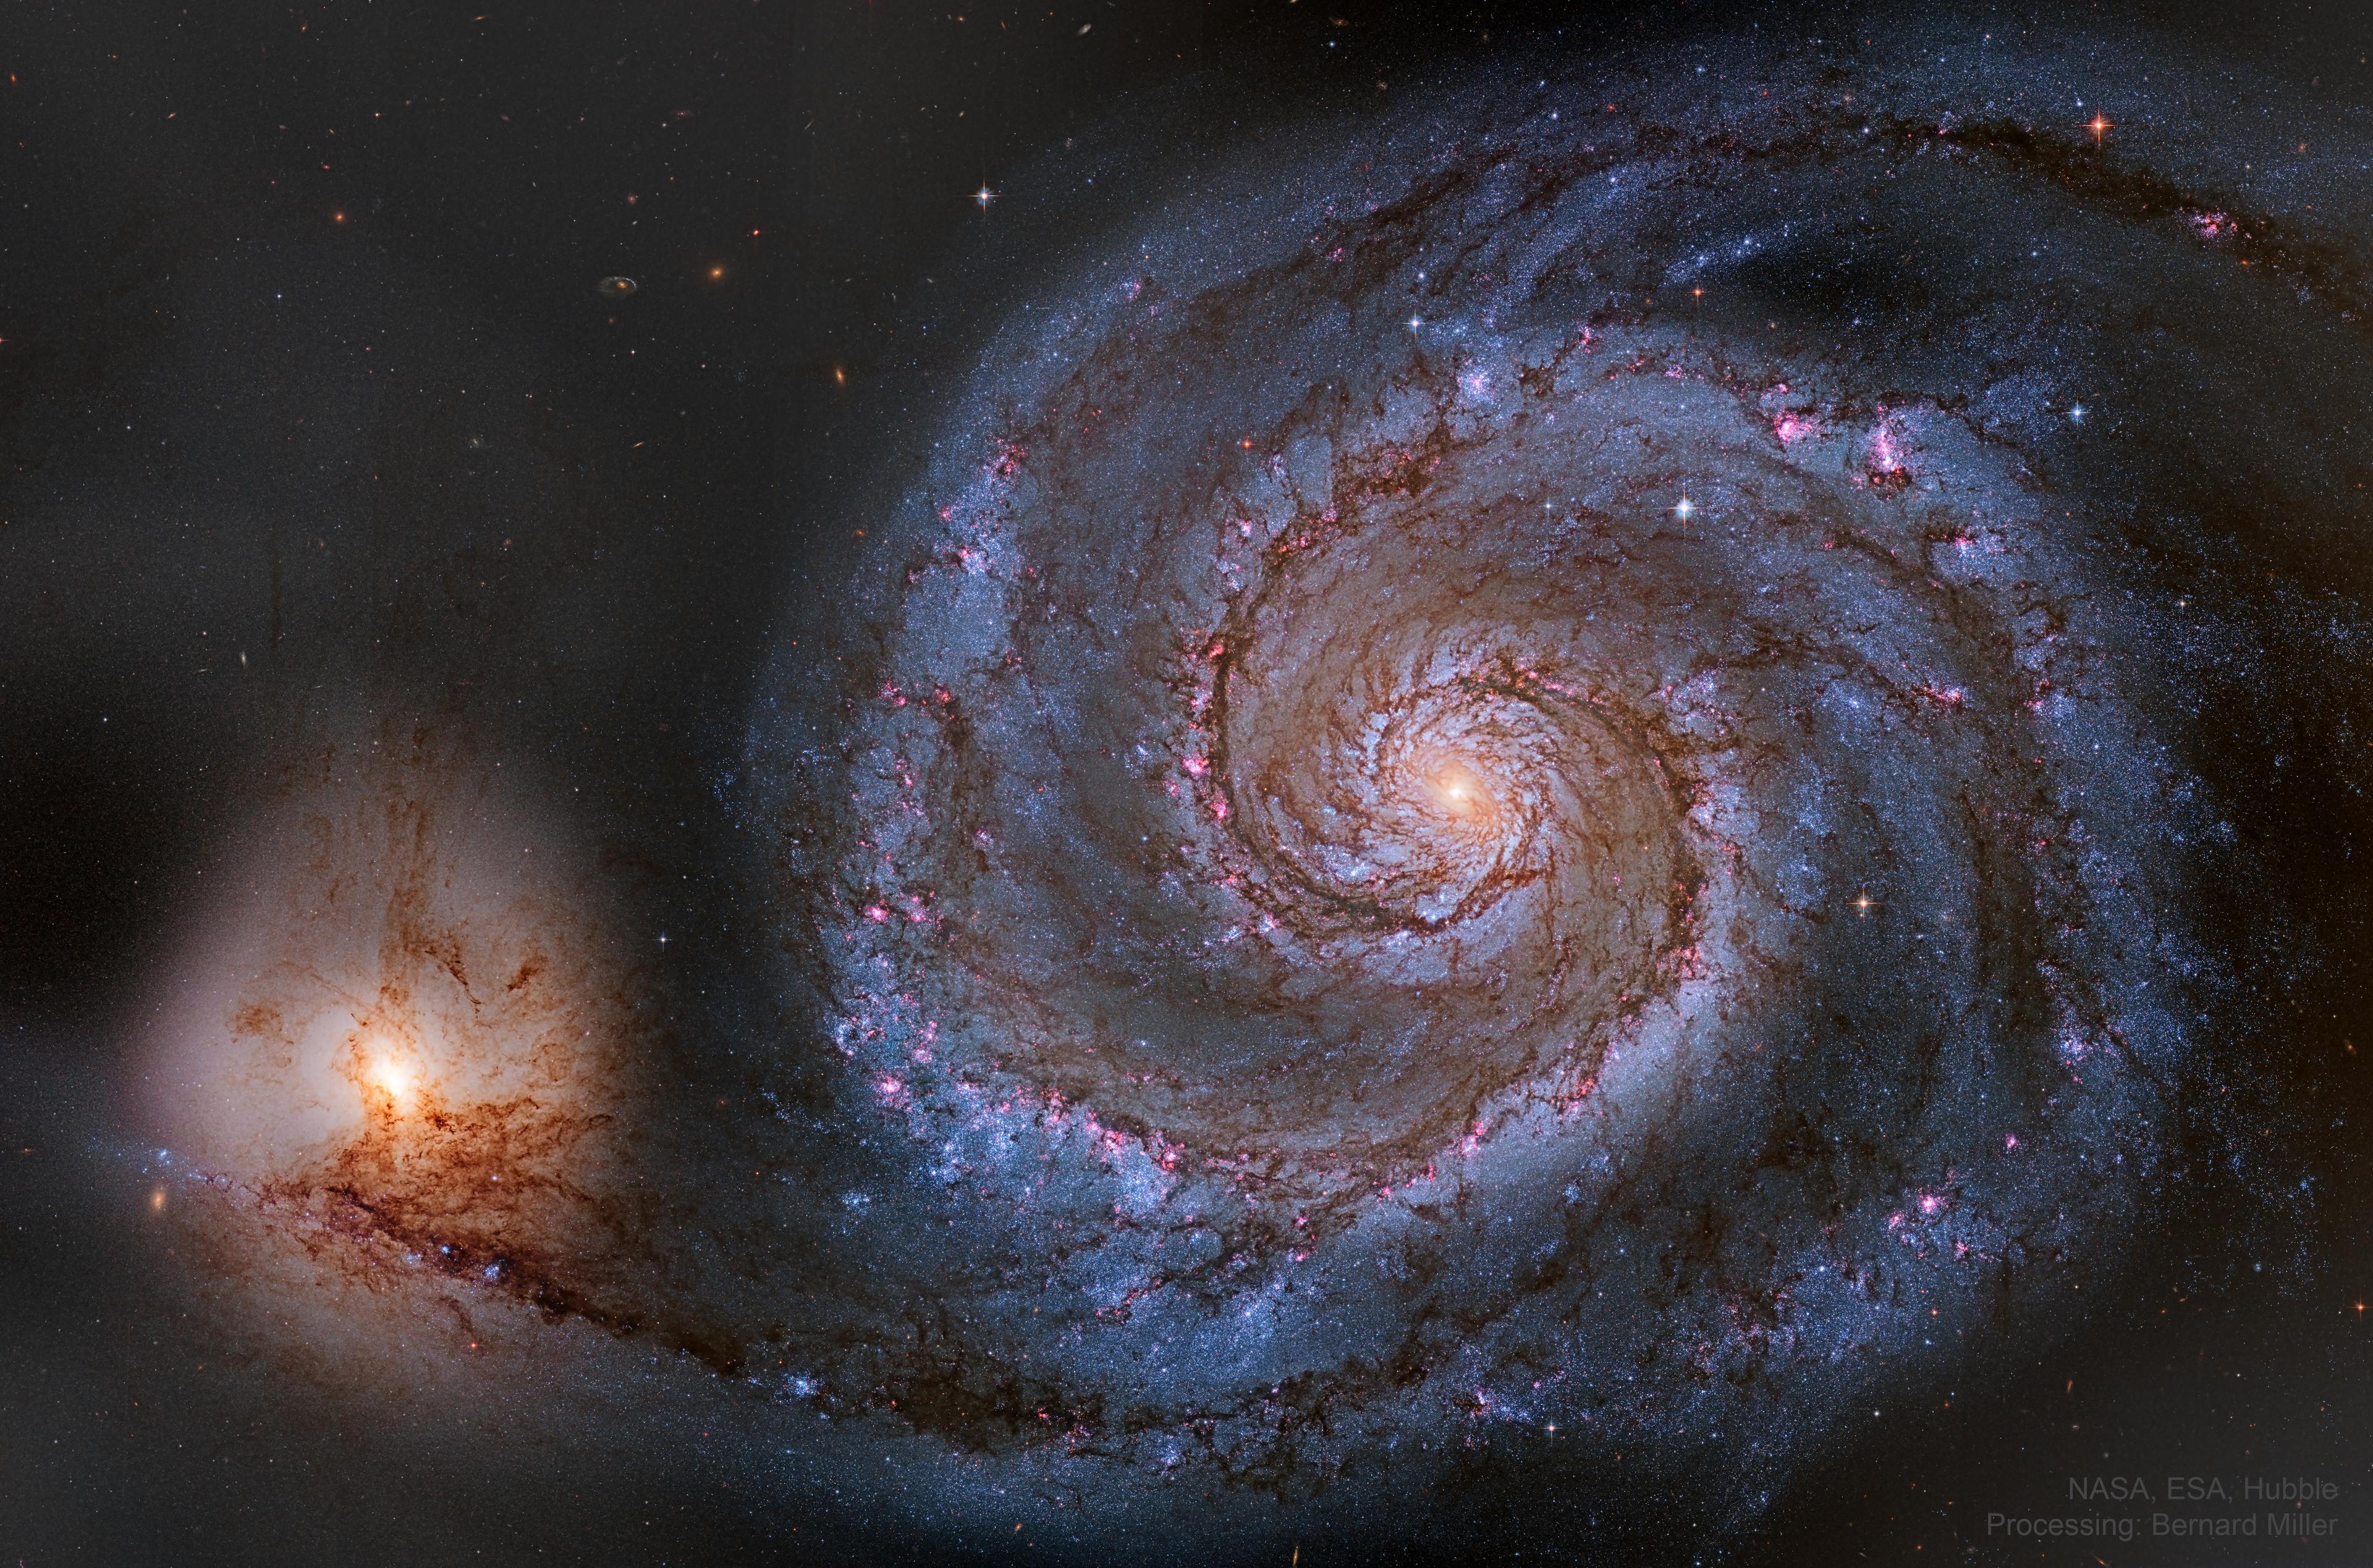 مجرّة حلزونيّة تُرى من وجهها بأذرعها التي تؤوي مناطق تشكل نجمي ورديّة ونواتها الصفراء الساطعة وعلى أسفل اليسار مجرّة أصغر متفاعلة ثقاليّاً يمتد إليها ذراع من المجرّة الكبيرة